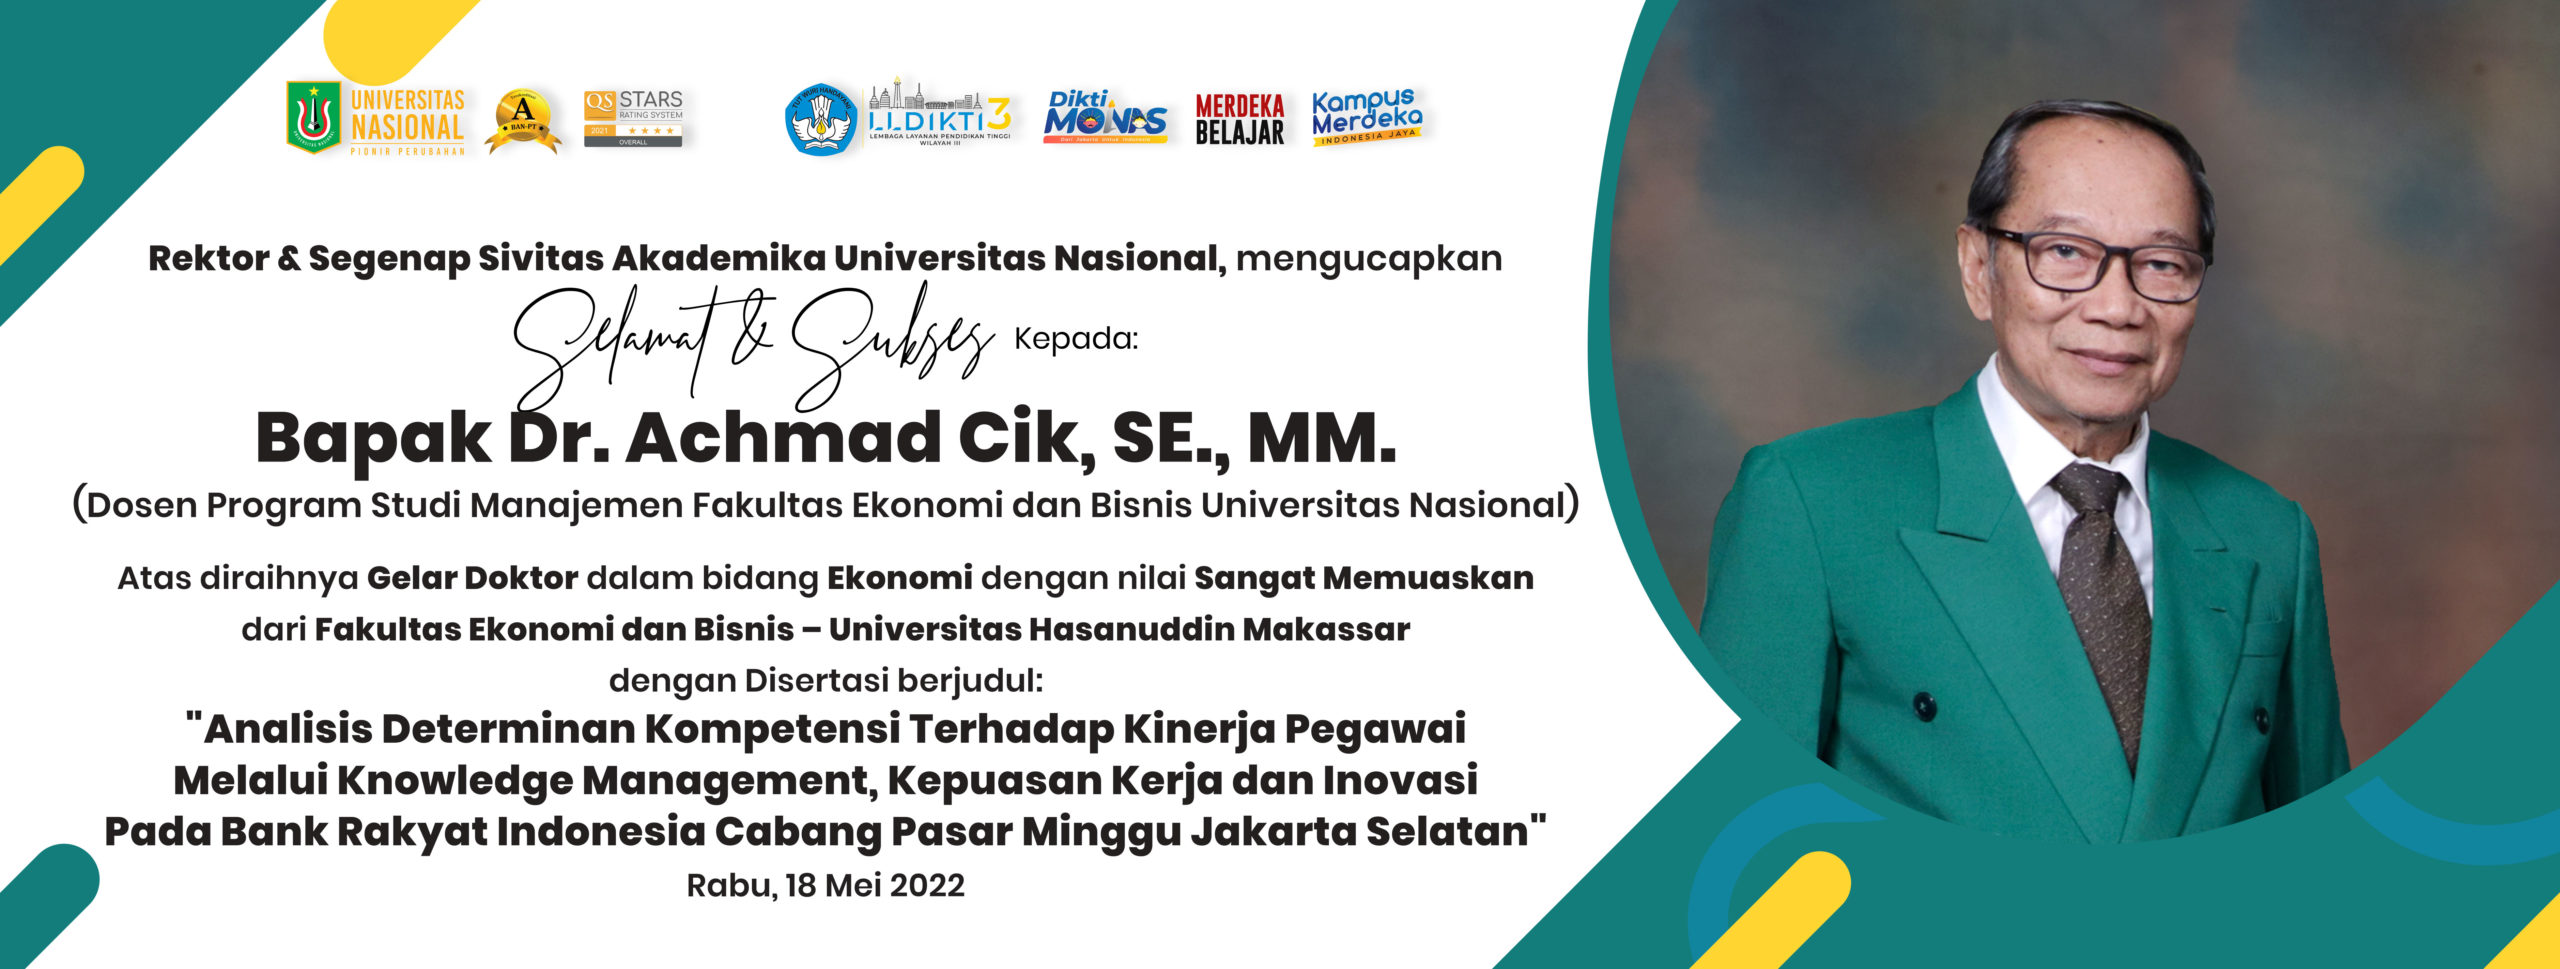 Selamat & Sukses Kepada: Bapak Dr. Achmad Cik, SE., MM. (Dosen Program Studi Manajemen Fakultas Ekonomi dan Bisnis Universitas Nasional) Atas diraihnya Gelar Doktor dalam bidang Ekonomi